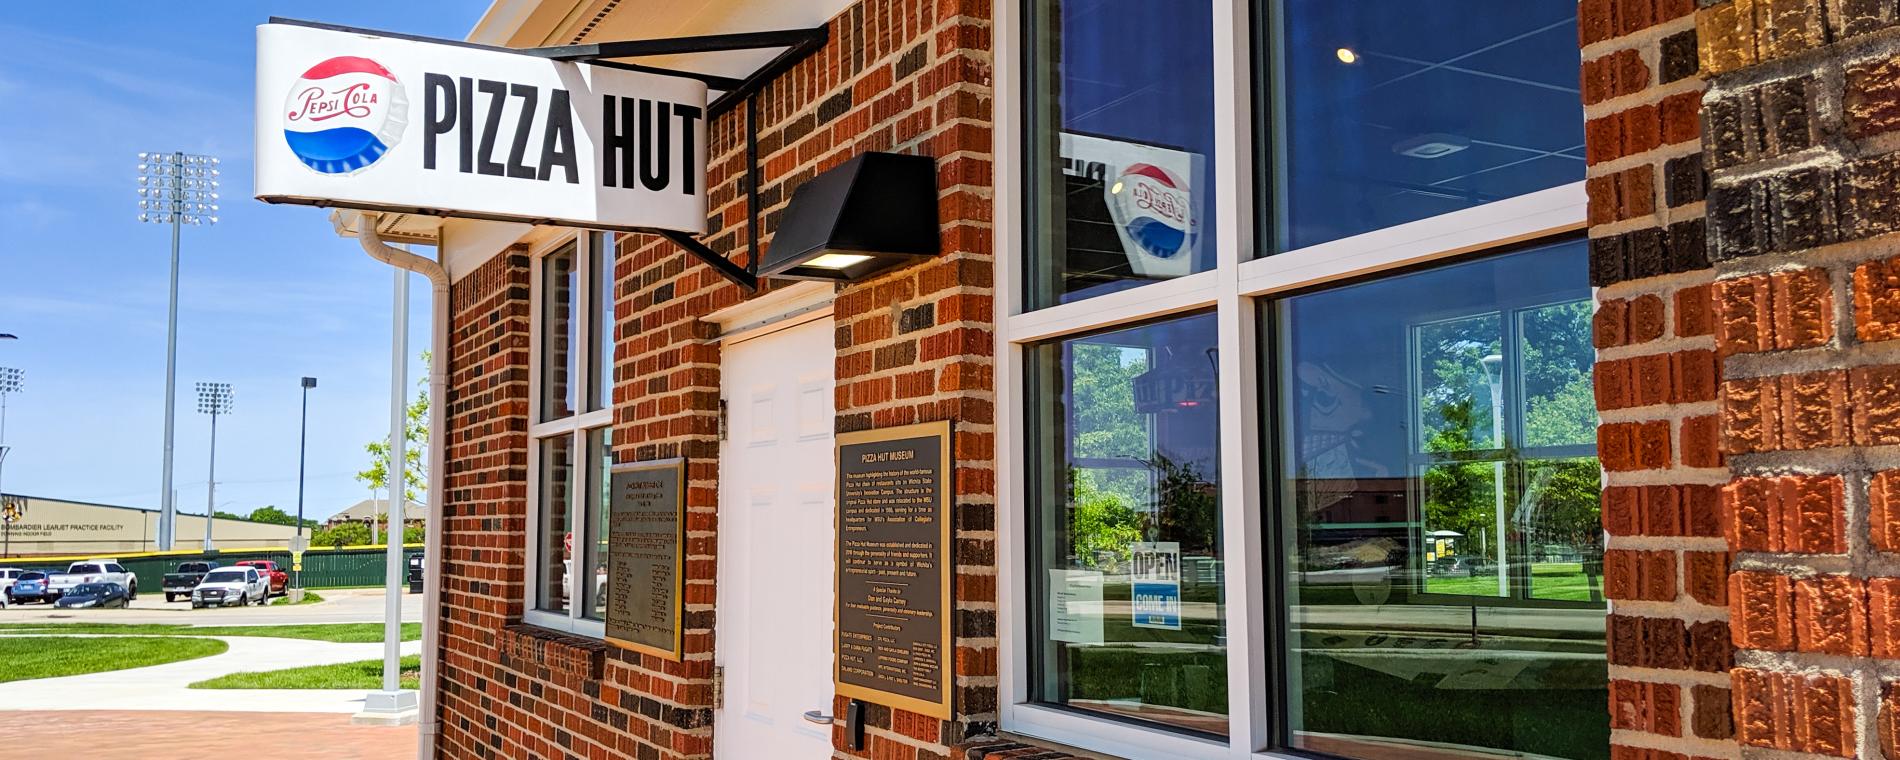 Pizza Hut Museum Exterior